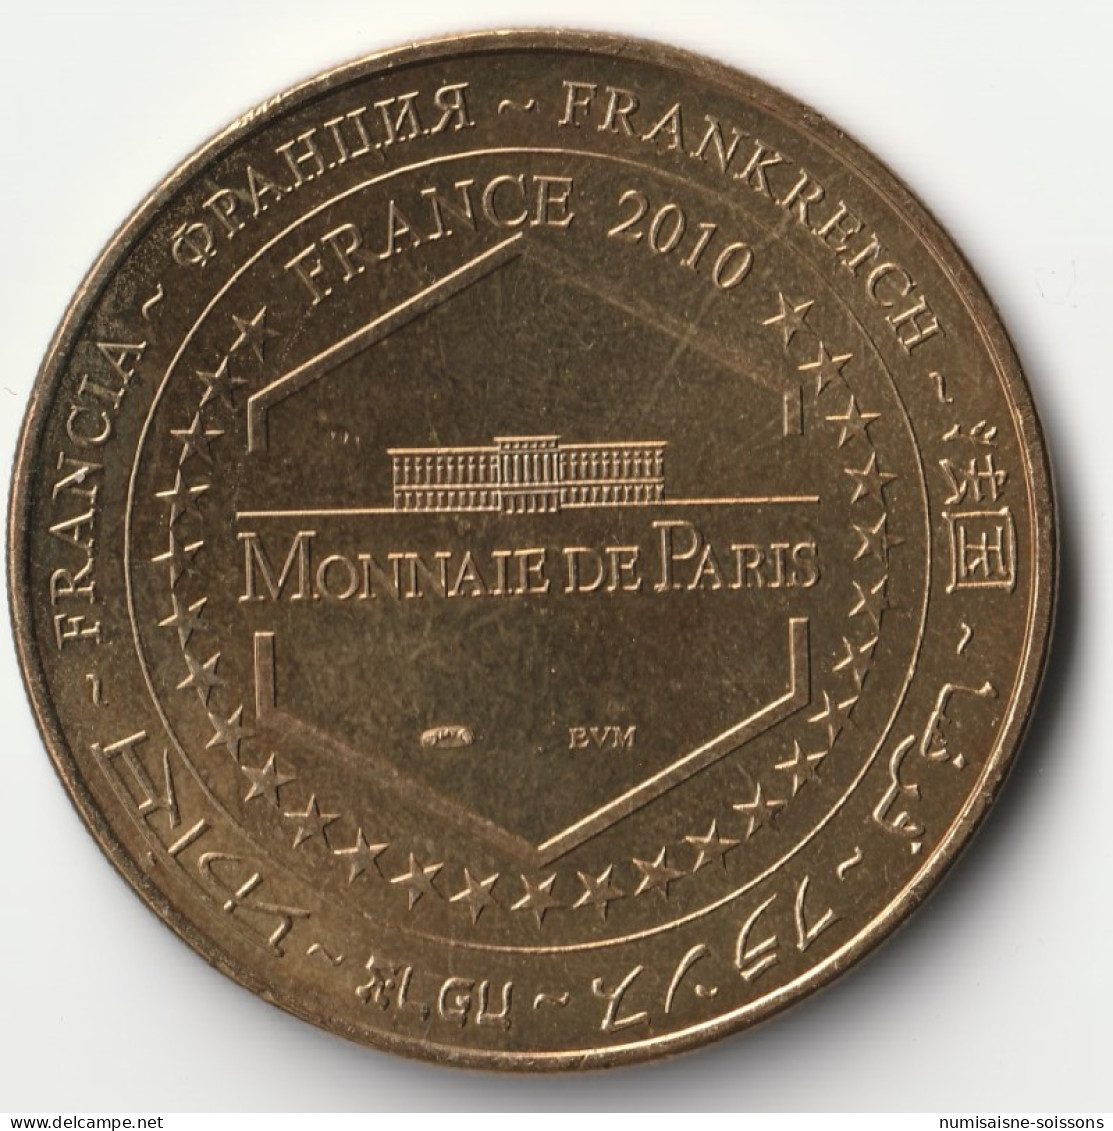 93 - LA COURNEUVE - SARL V.BRUNO - 1975-2010 - Monnaie De Paris - 2010 - 2010